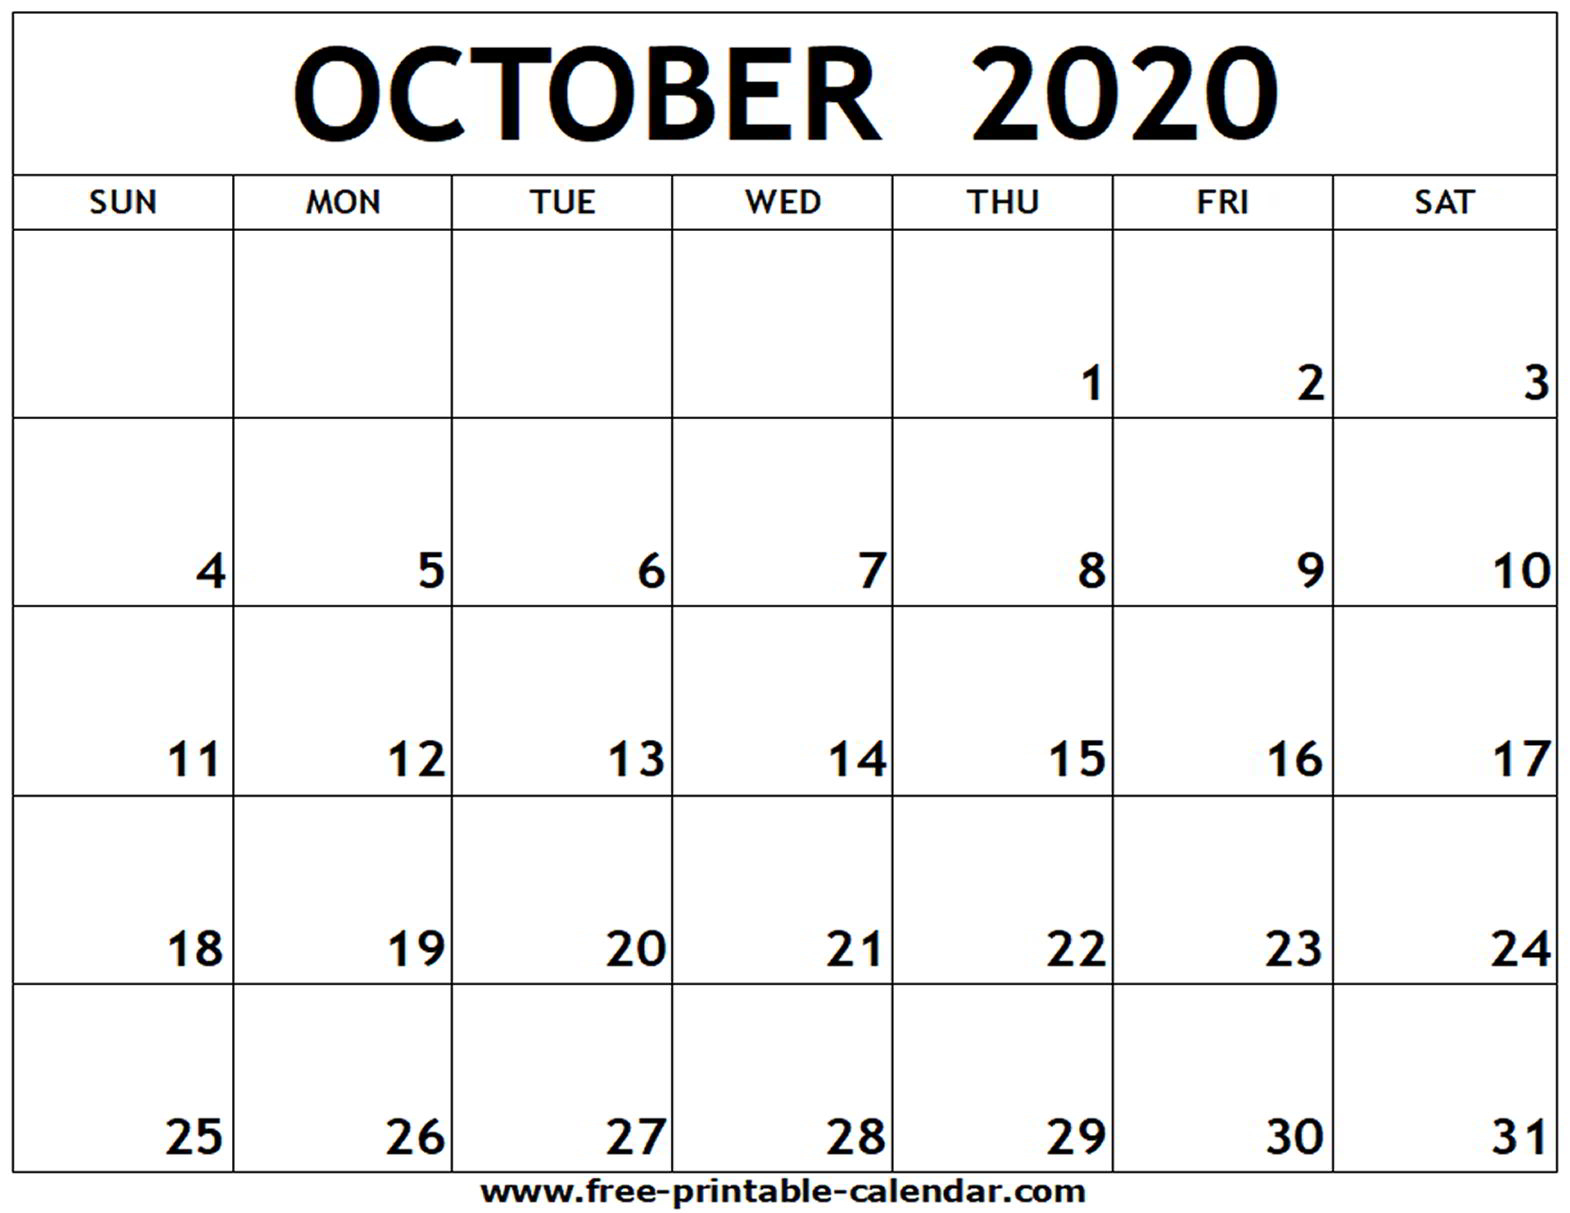 October 2020 Printable Calendar - Wpa.wpart.co